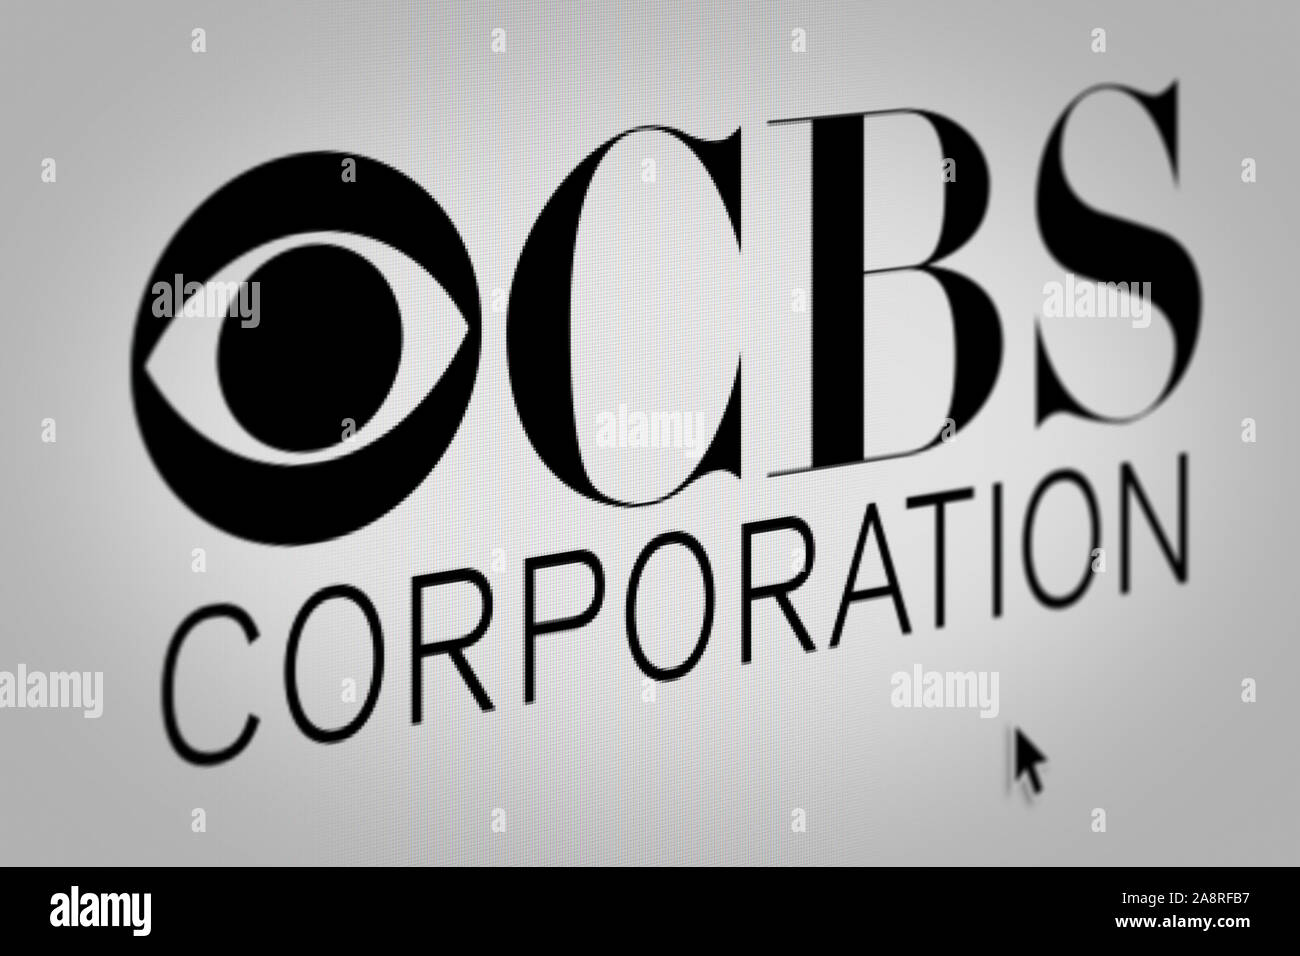 Logo des öffentlichen Unternehmens CBS Corp. auf einem Bildschirm in der Nähe angezeigt. Credit: PIXDUCE Stockfoto